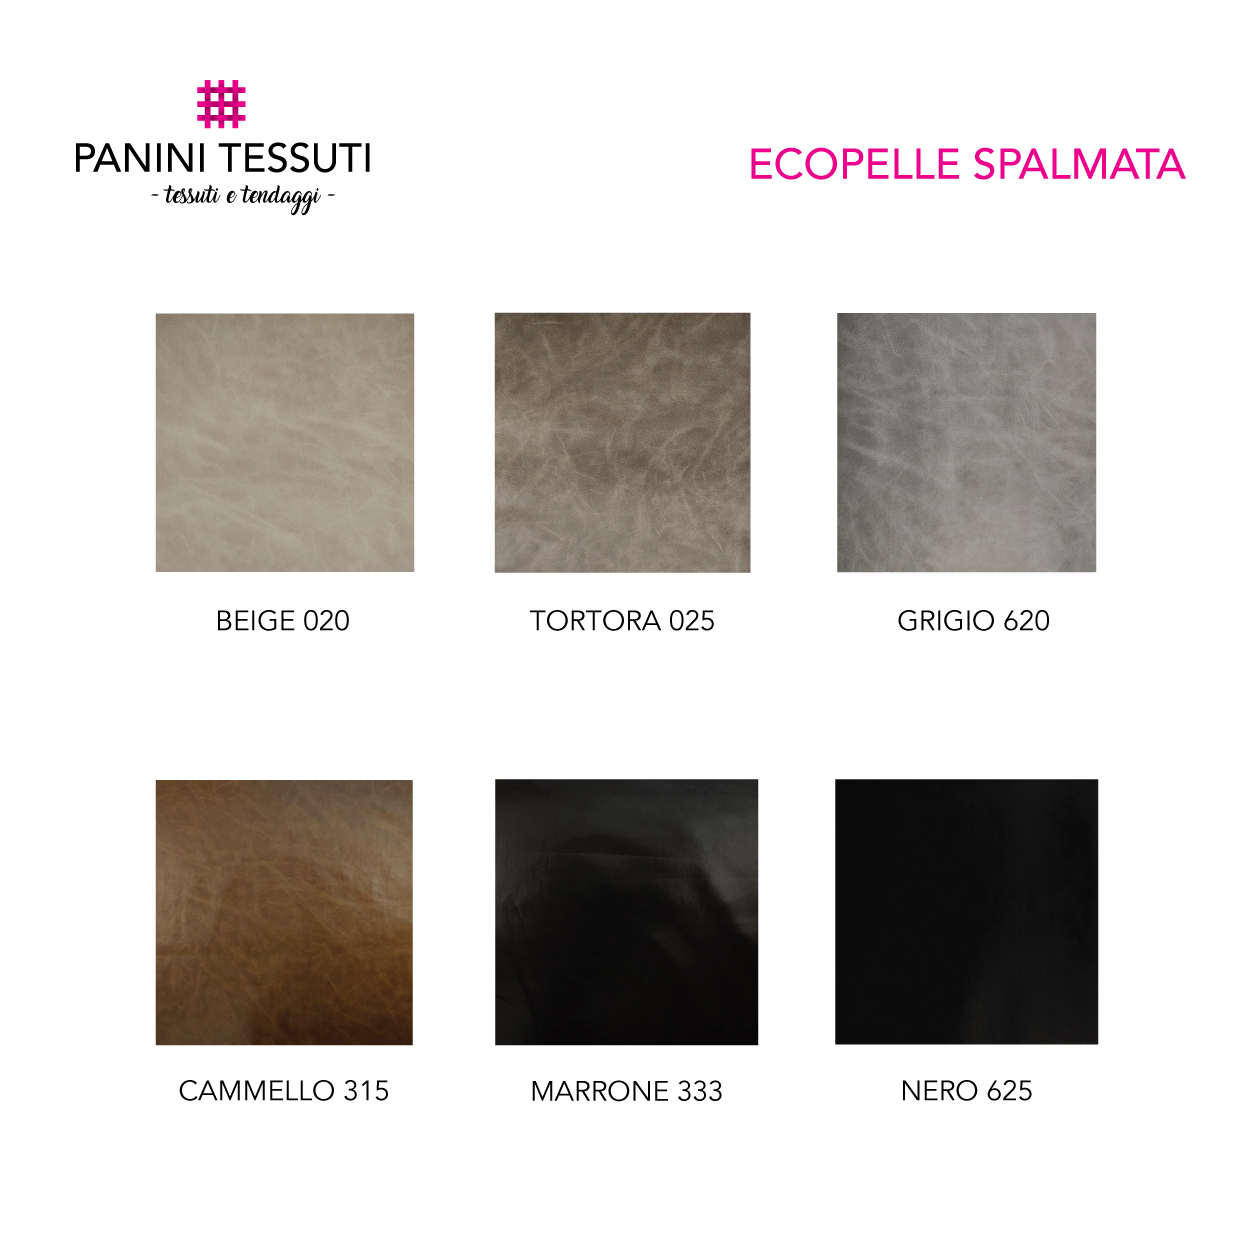 Tabella Colore Ecopelle Spalmata (1)